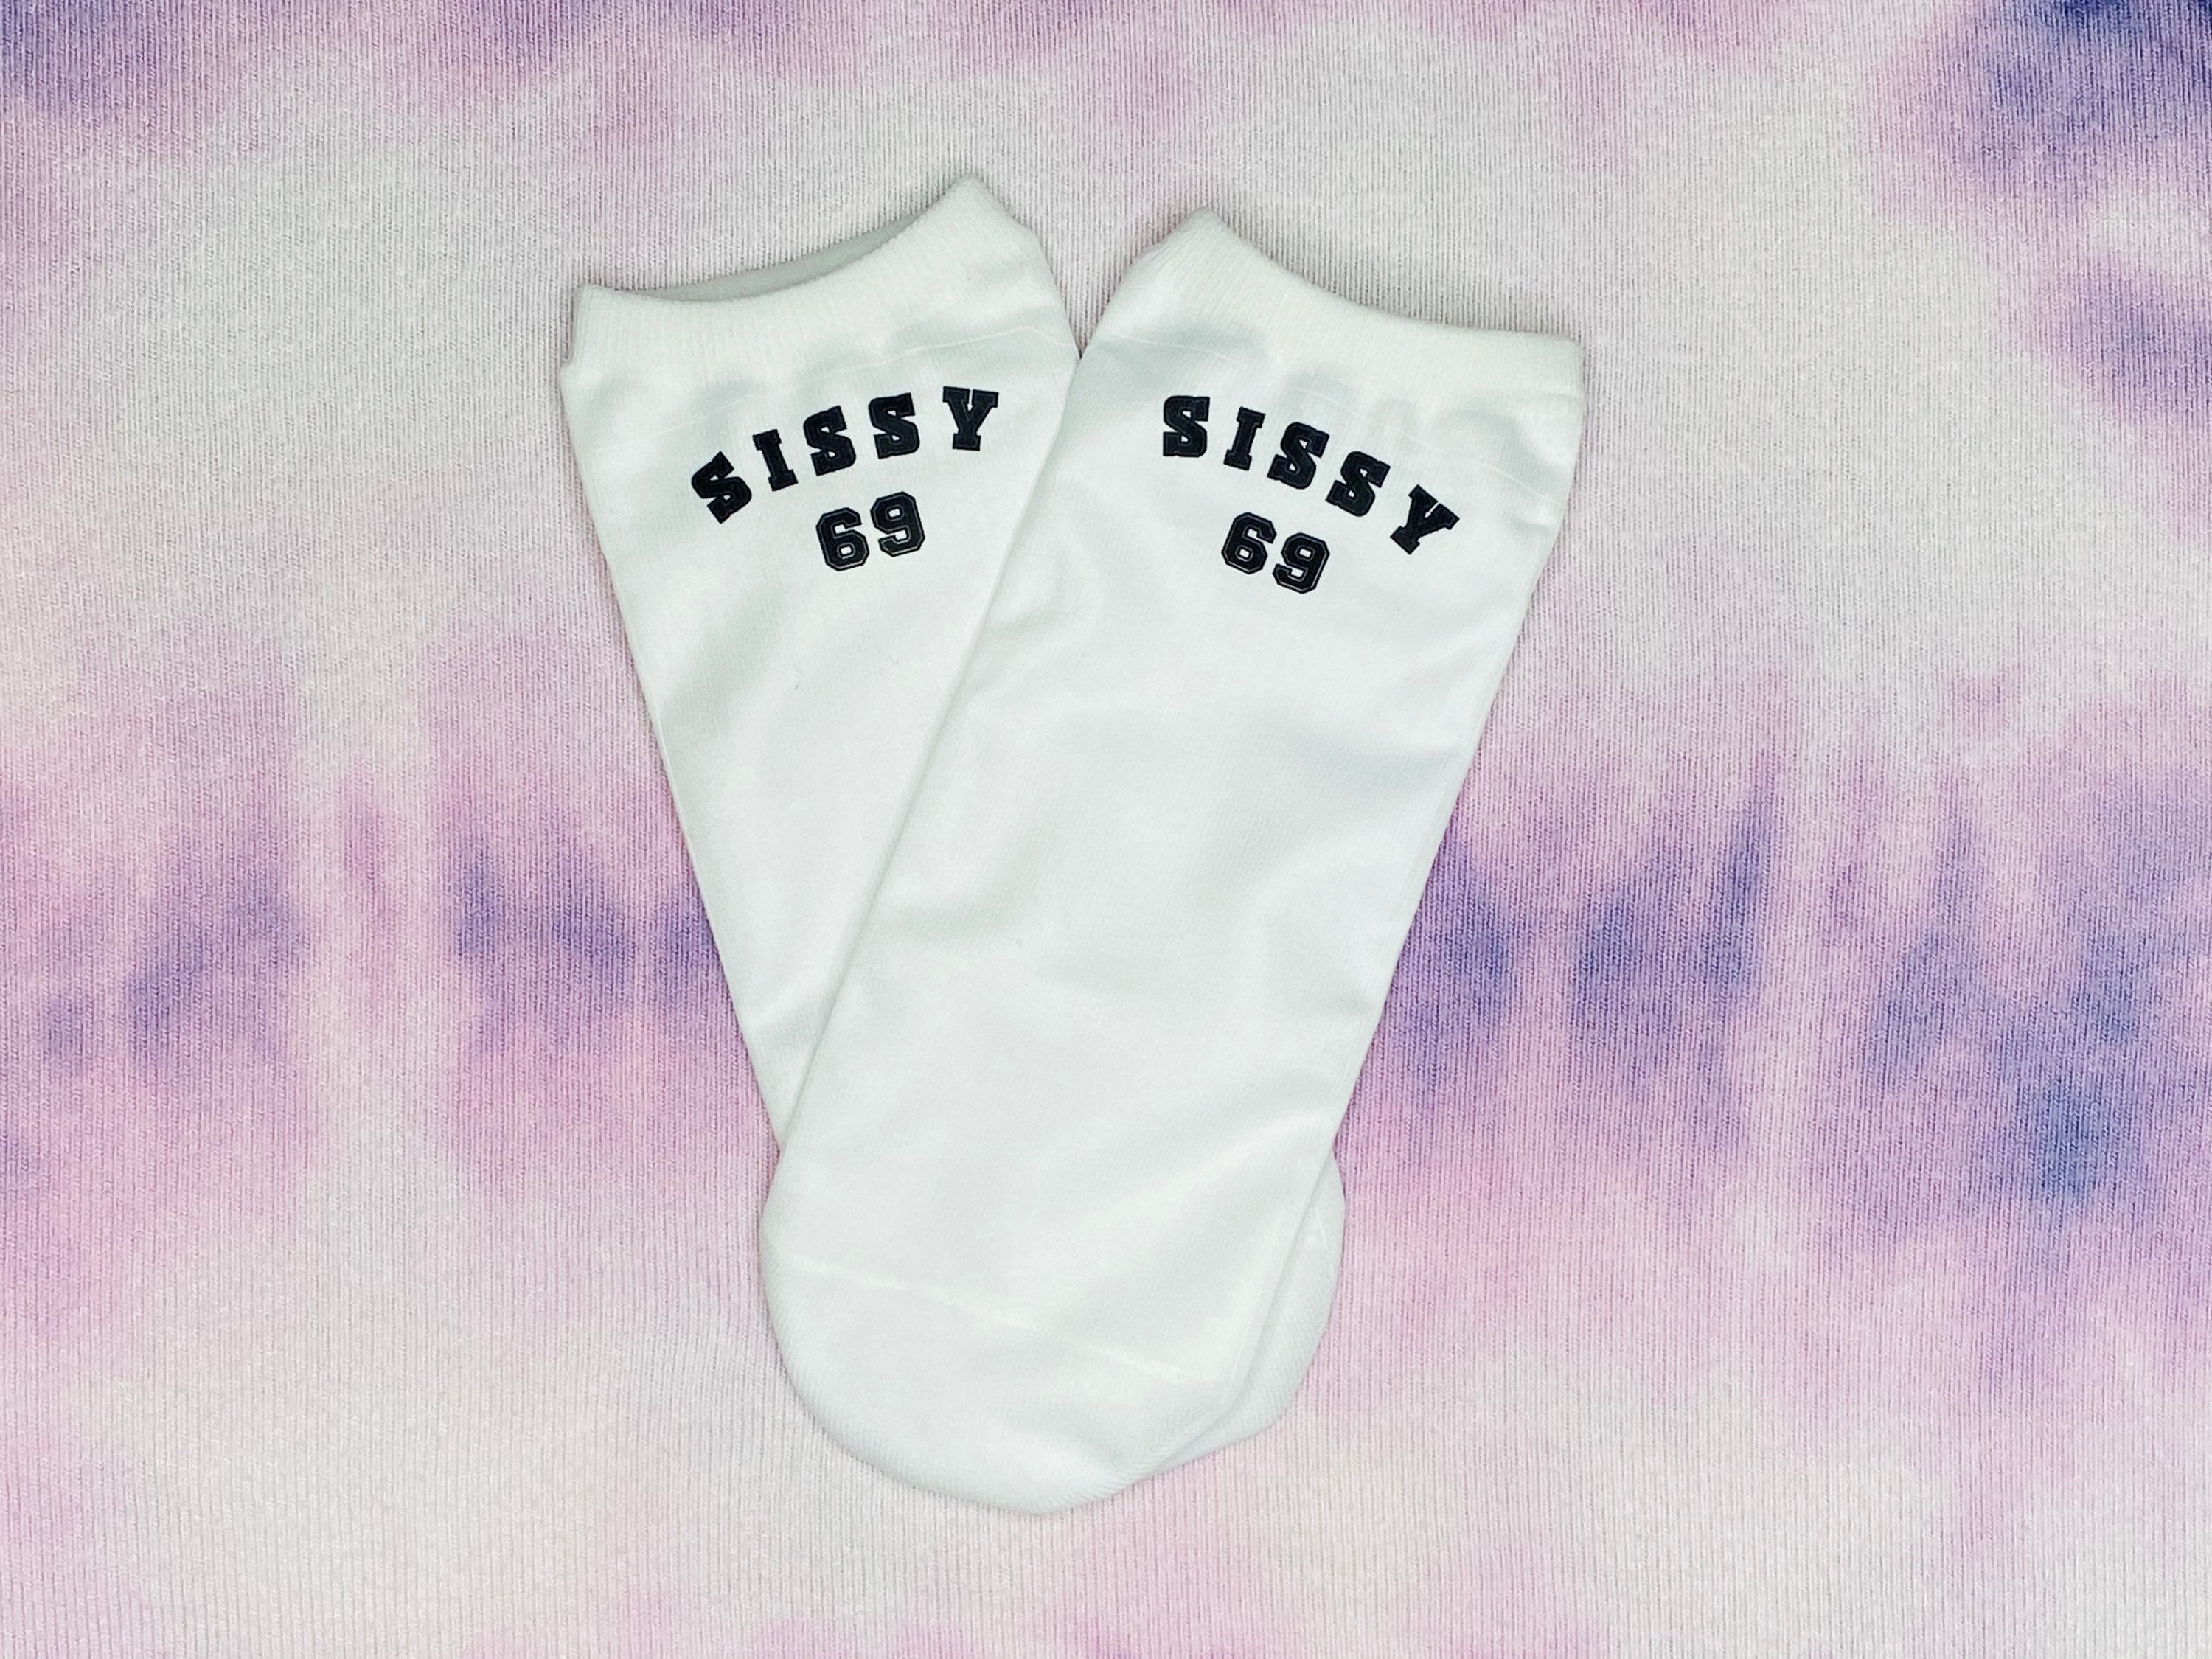 Sissy Boy Ankle Socks DDLG Clothing BDSM Clothing Sex | Etsy